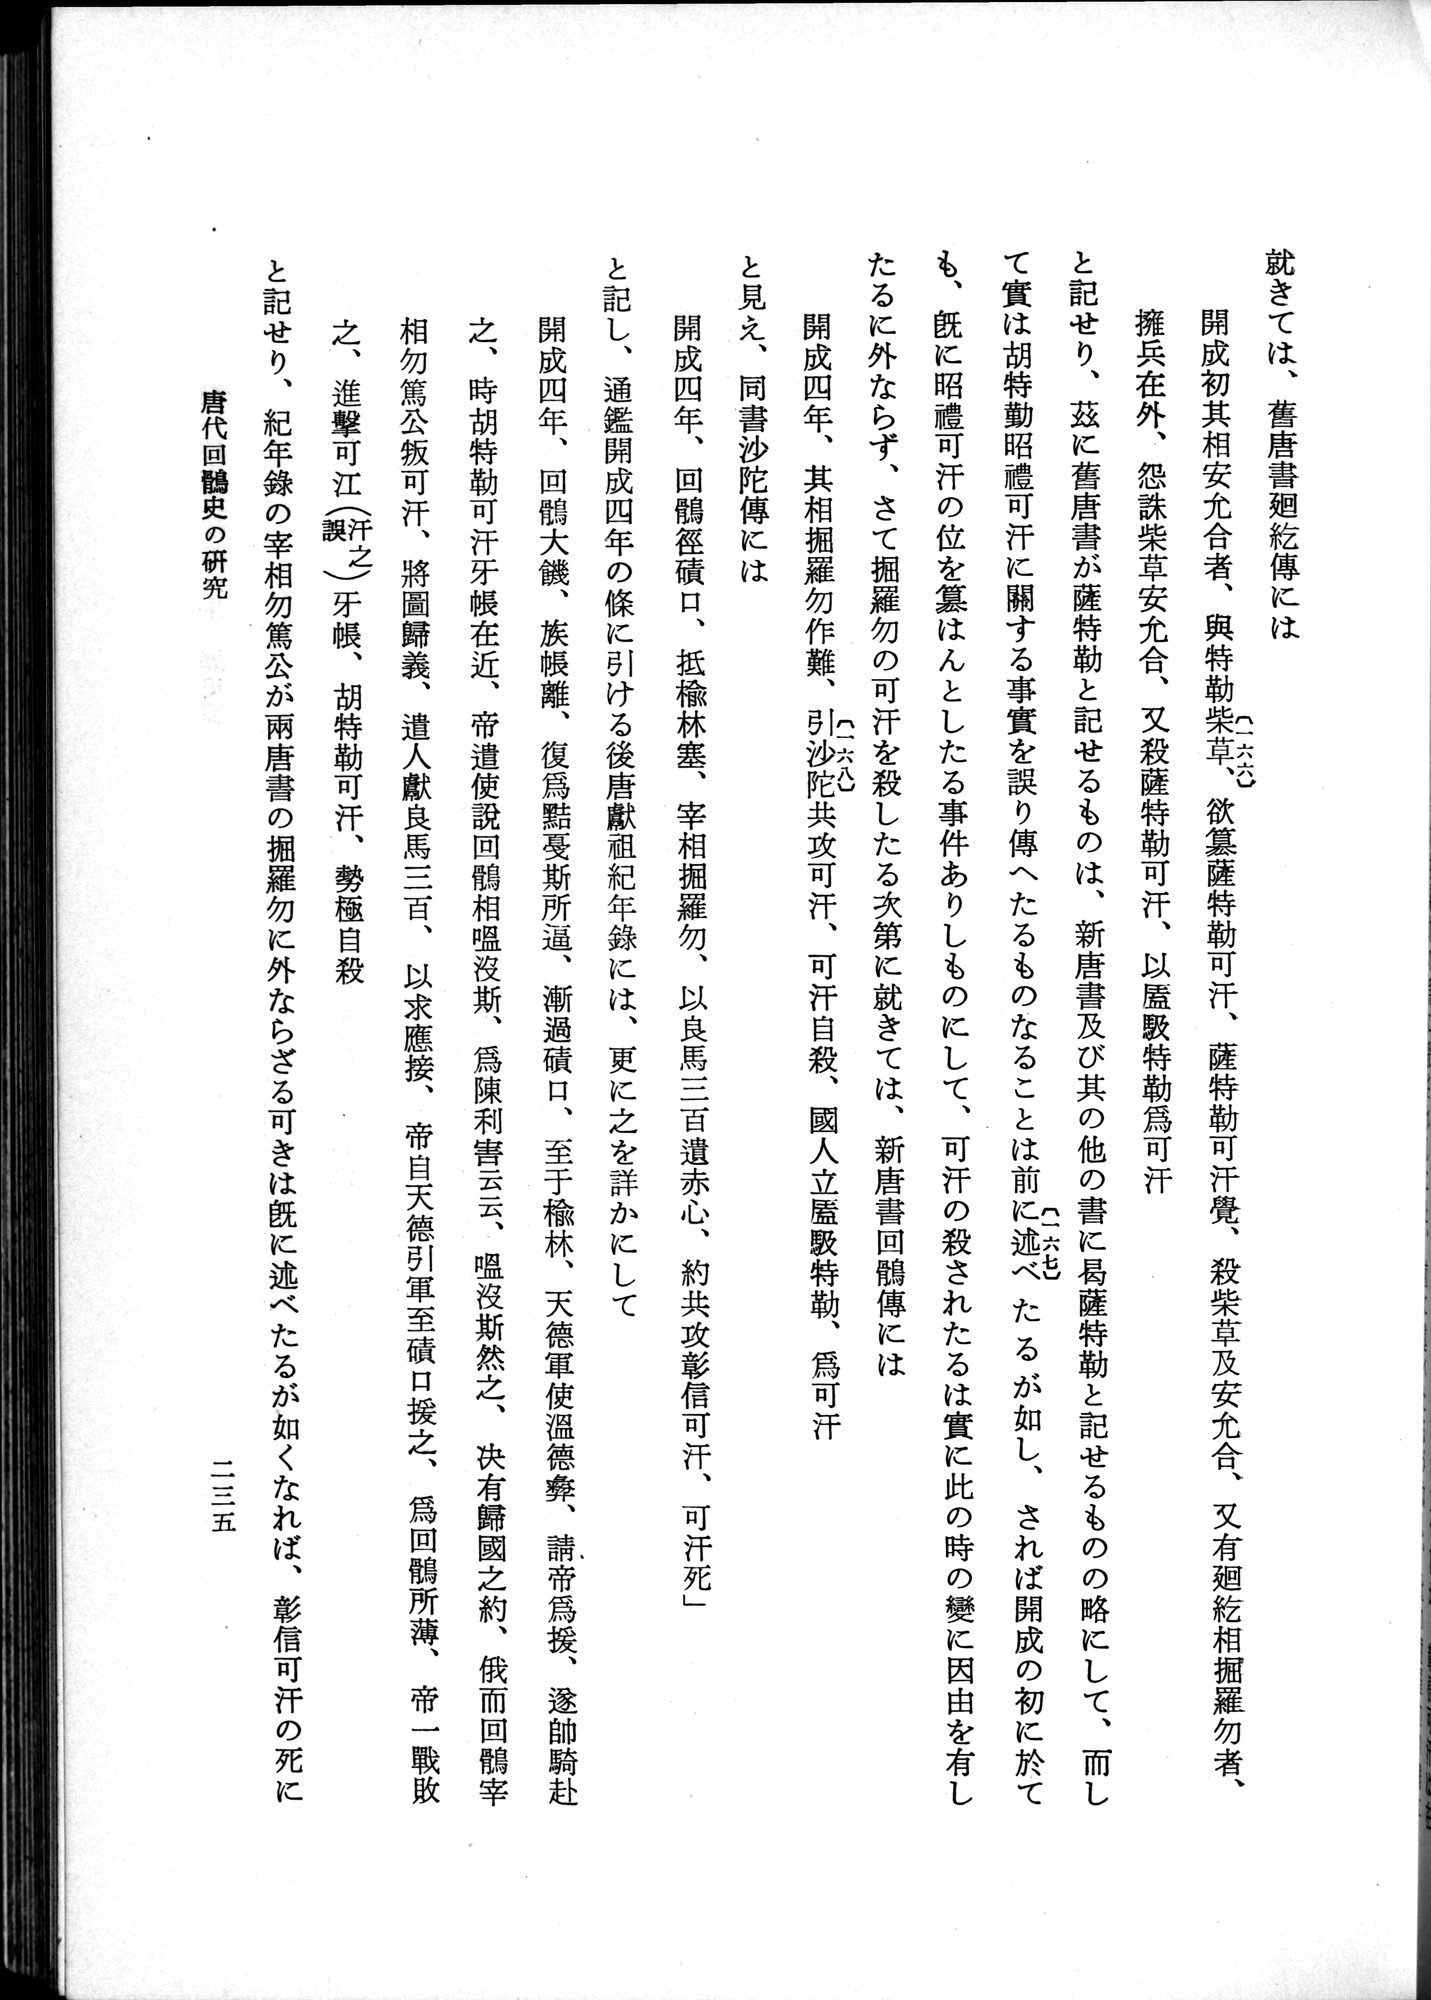 羽田博士史学論文集 : vol.1 / Page 273 (Grayscale High Resolution Image)